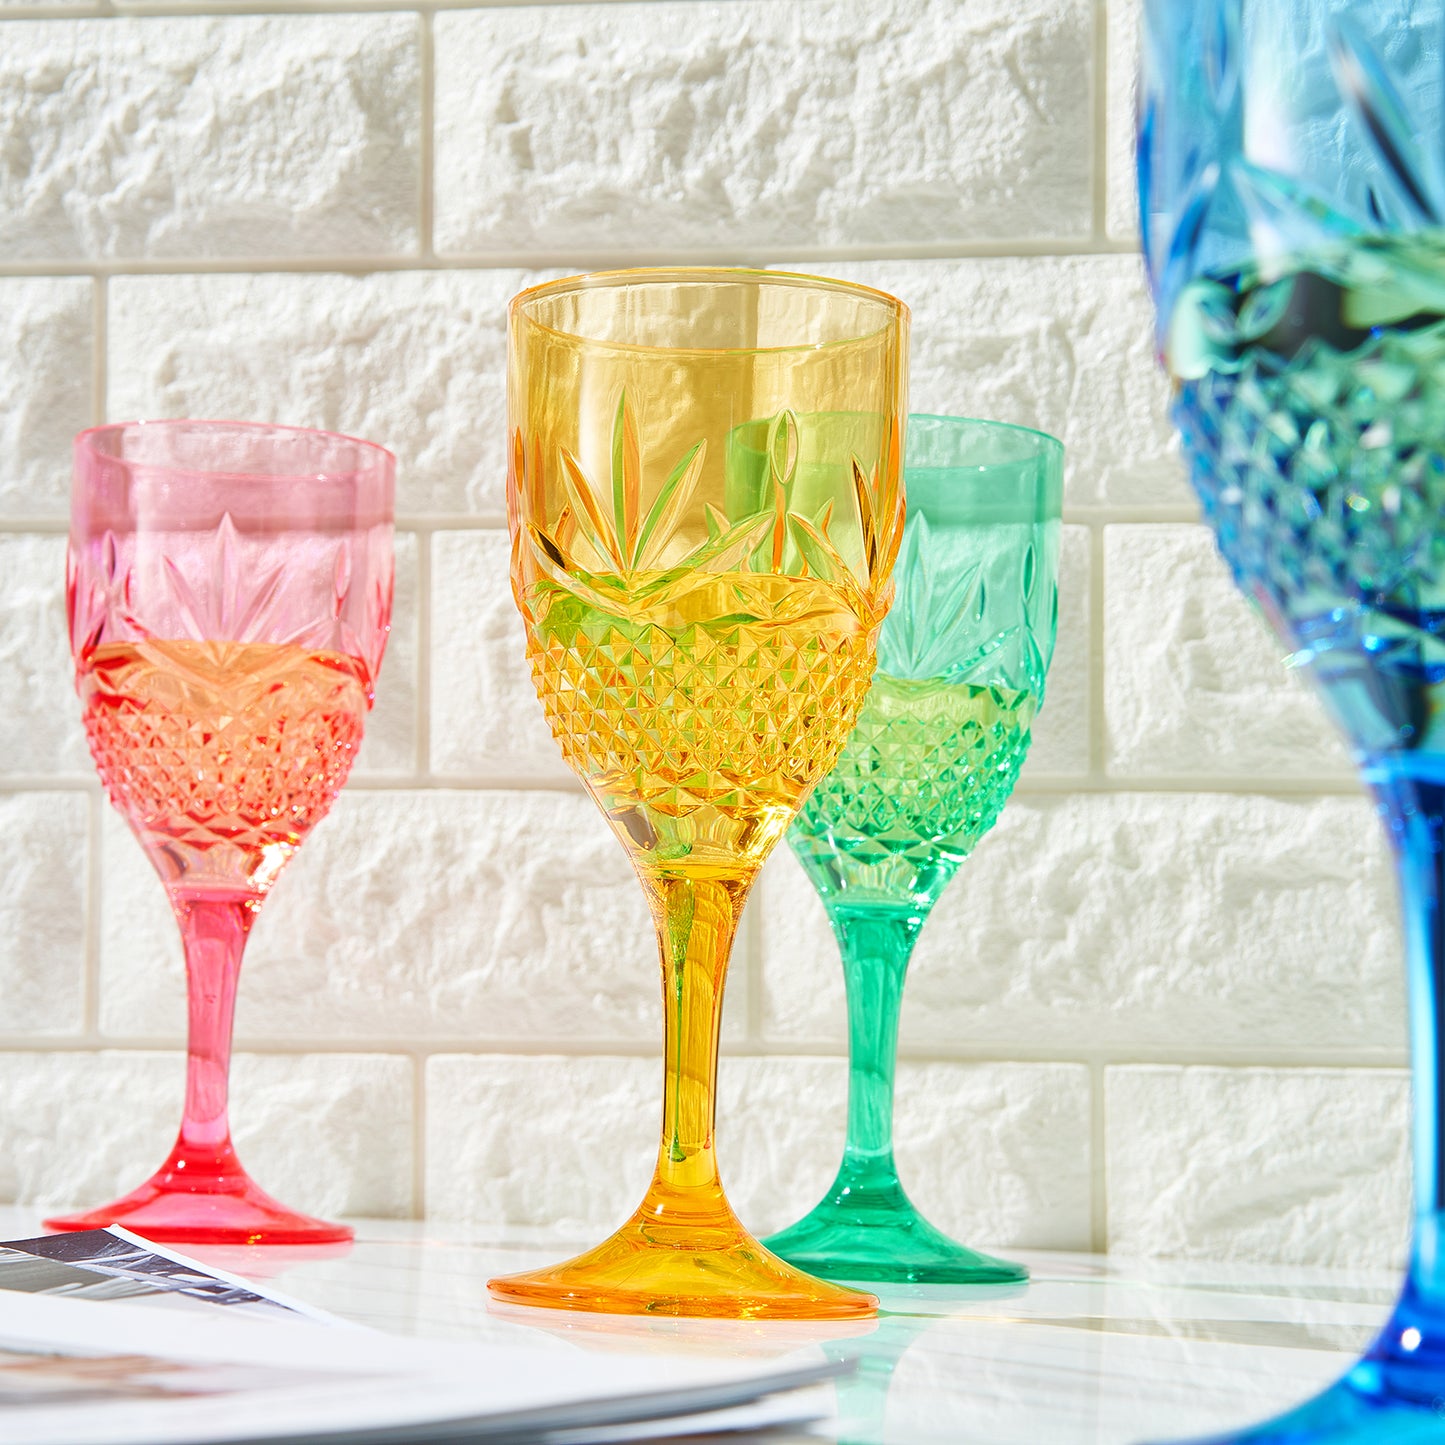 Onix Crystal Wine Glass, Unbreakable Acrylic, Set of 4